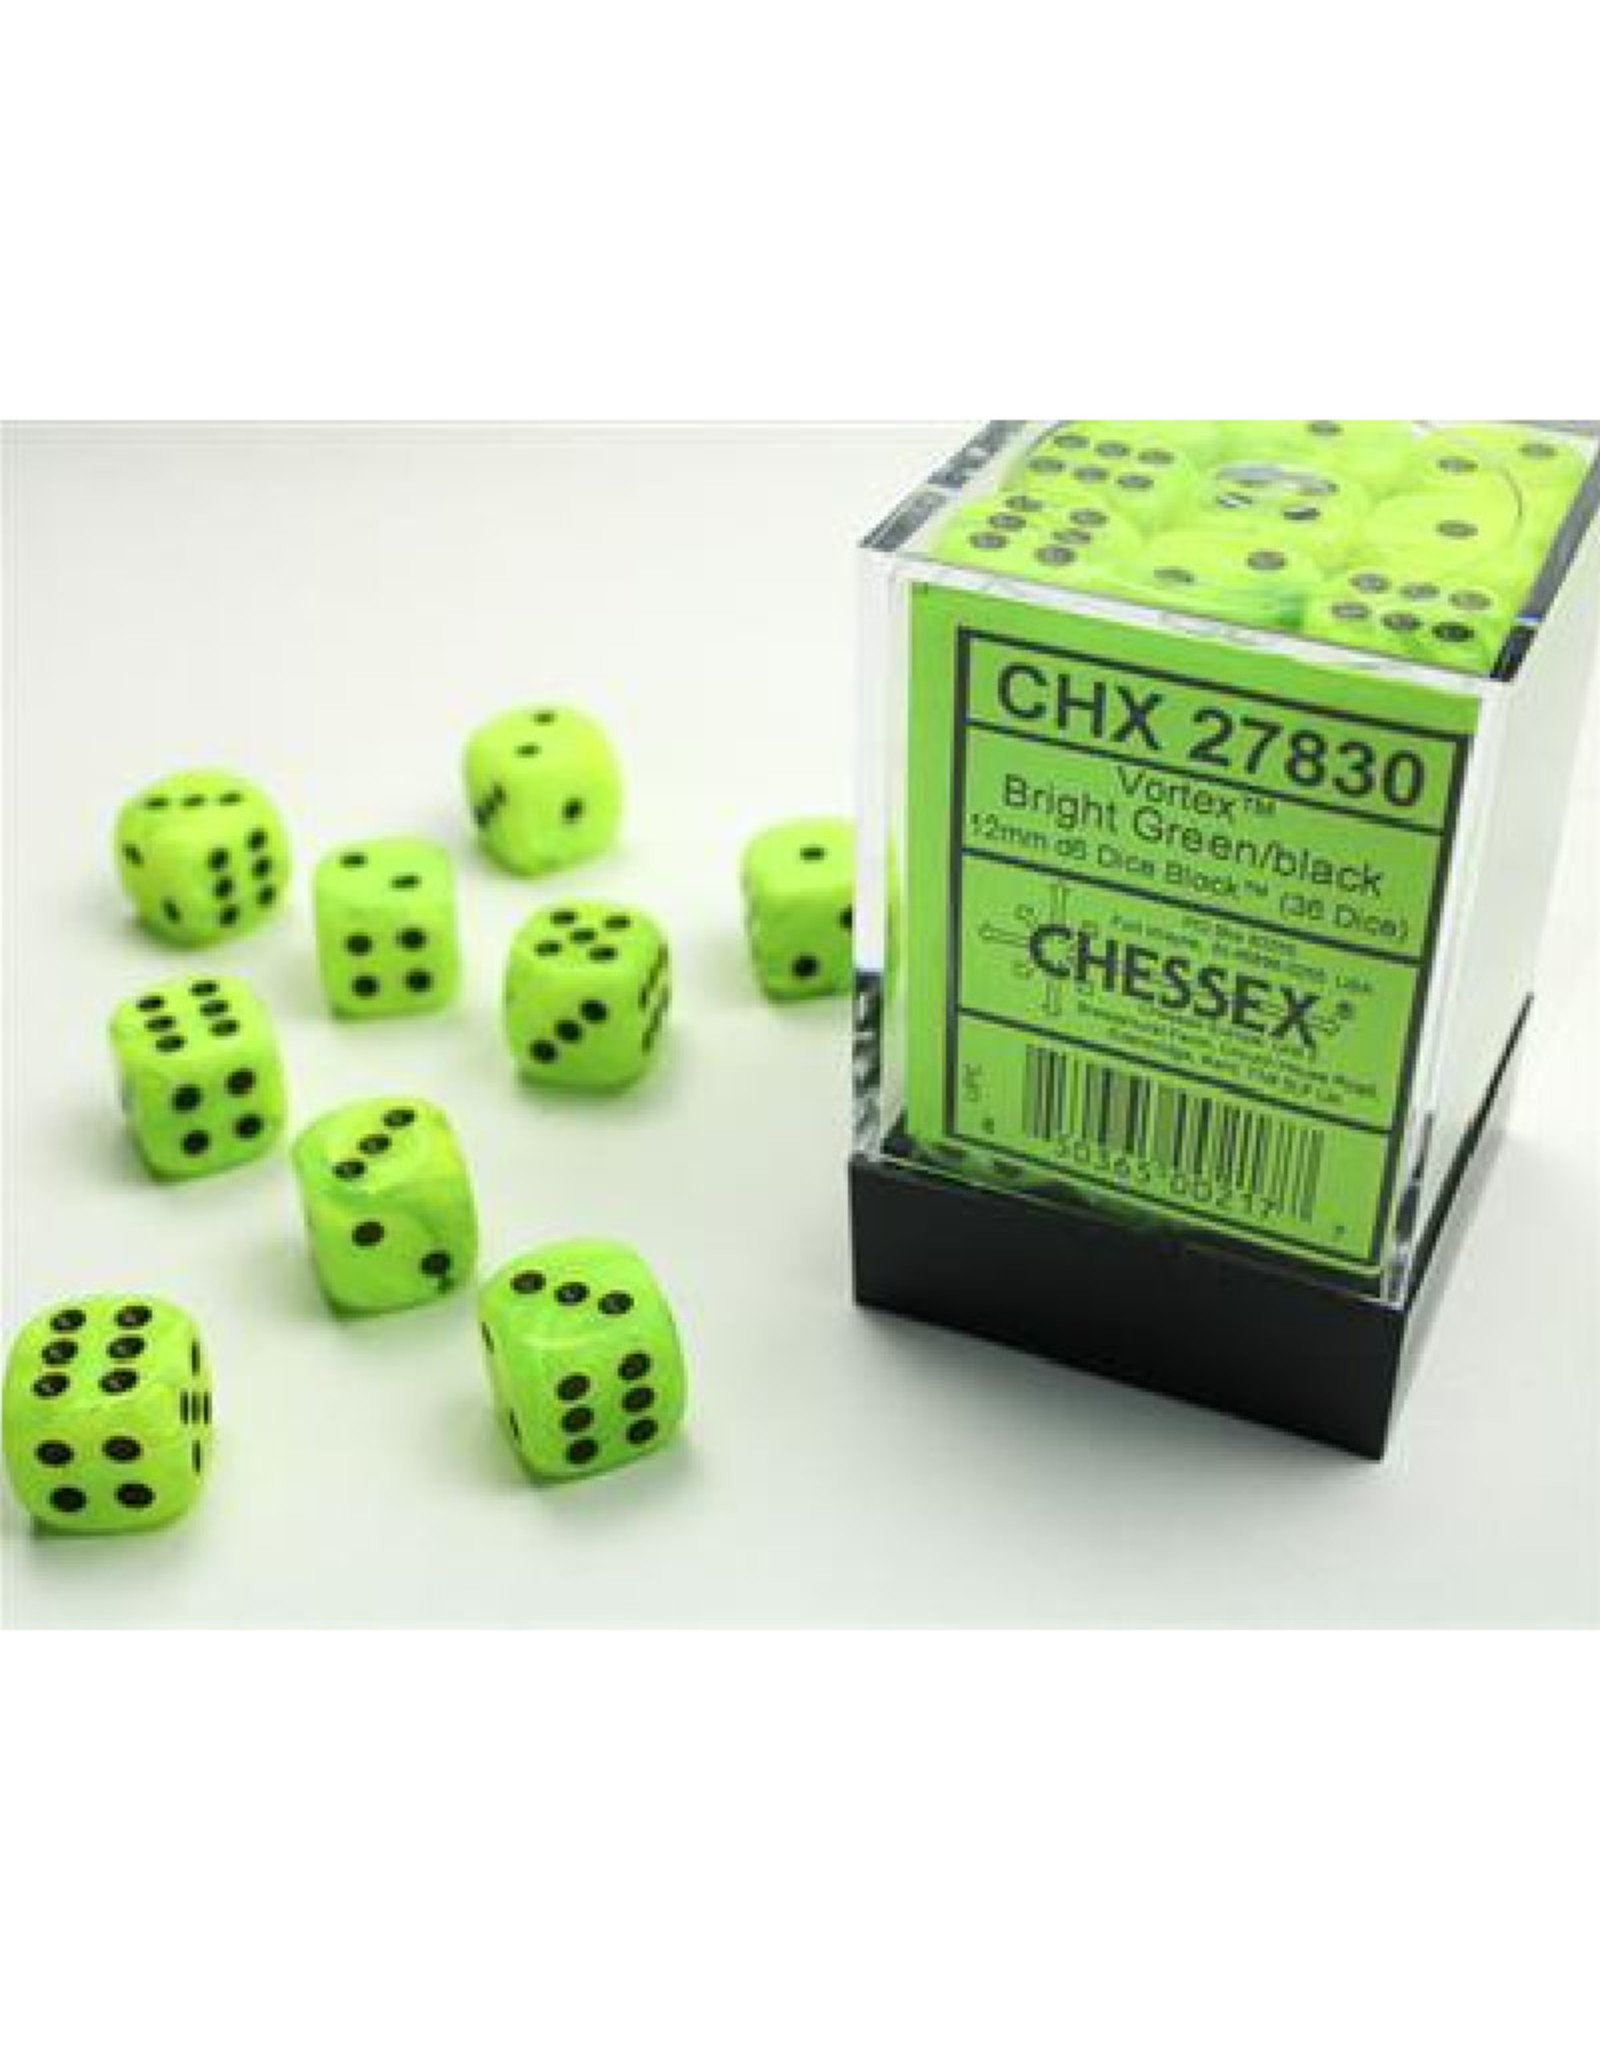 Chessex D6 Dice: 12mm Vortex Bright Green (36)